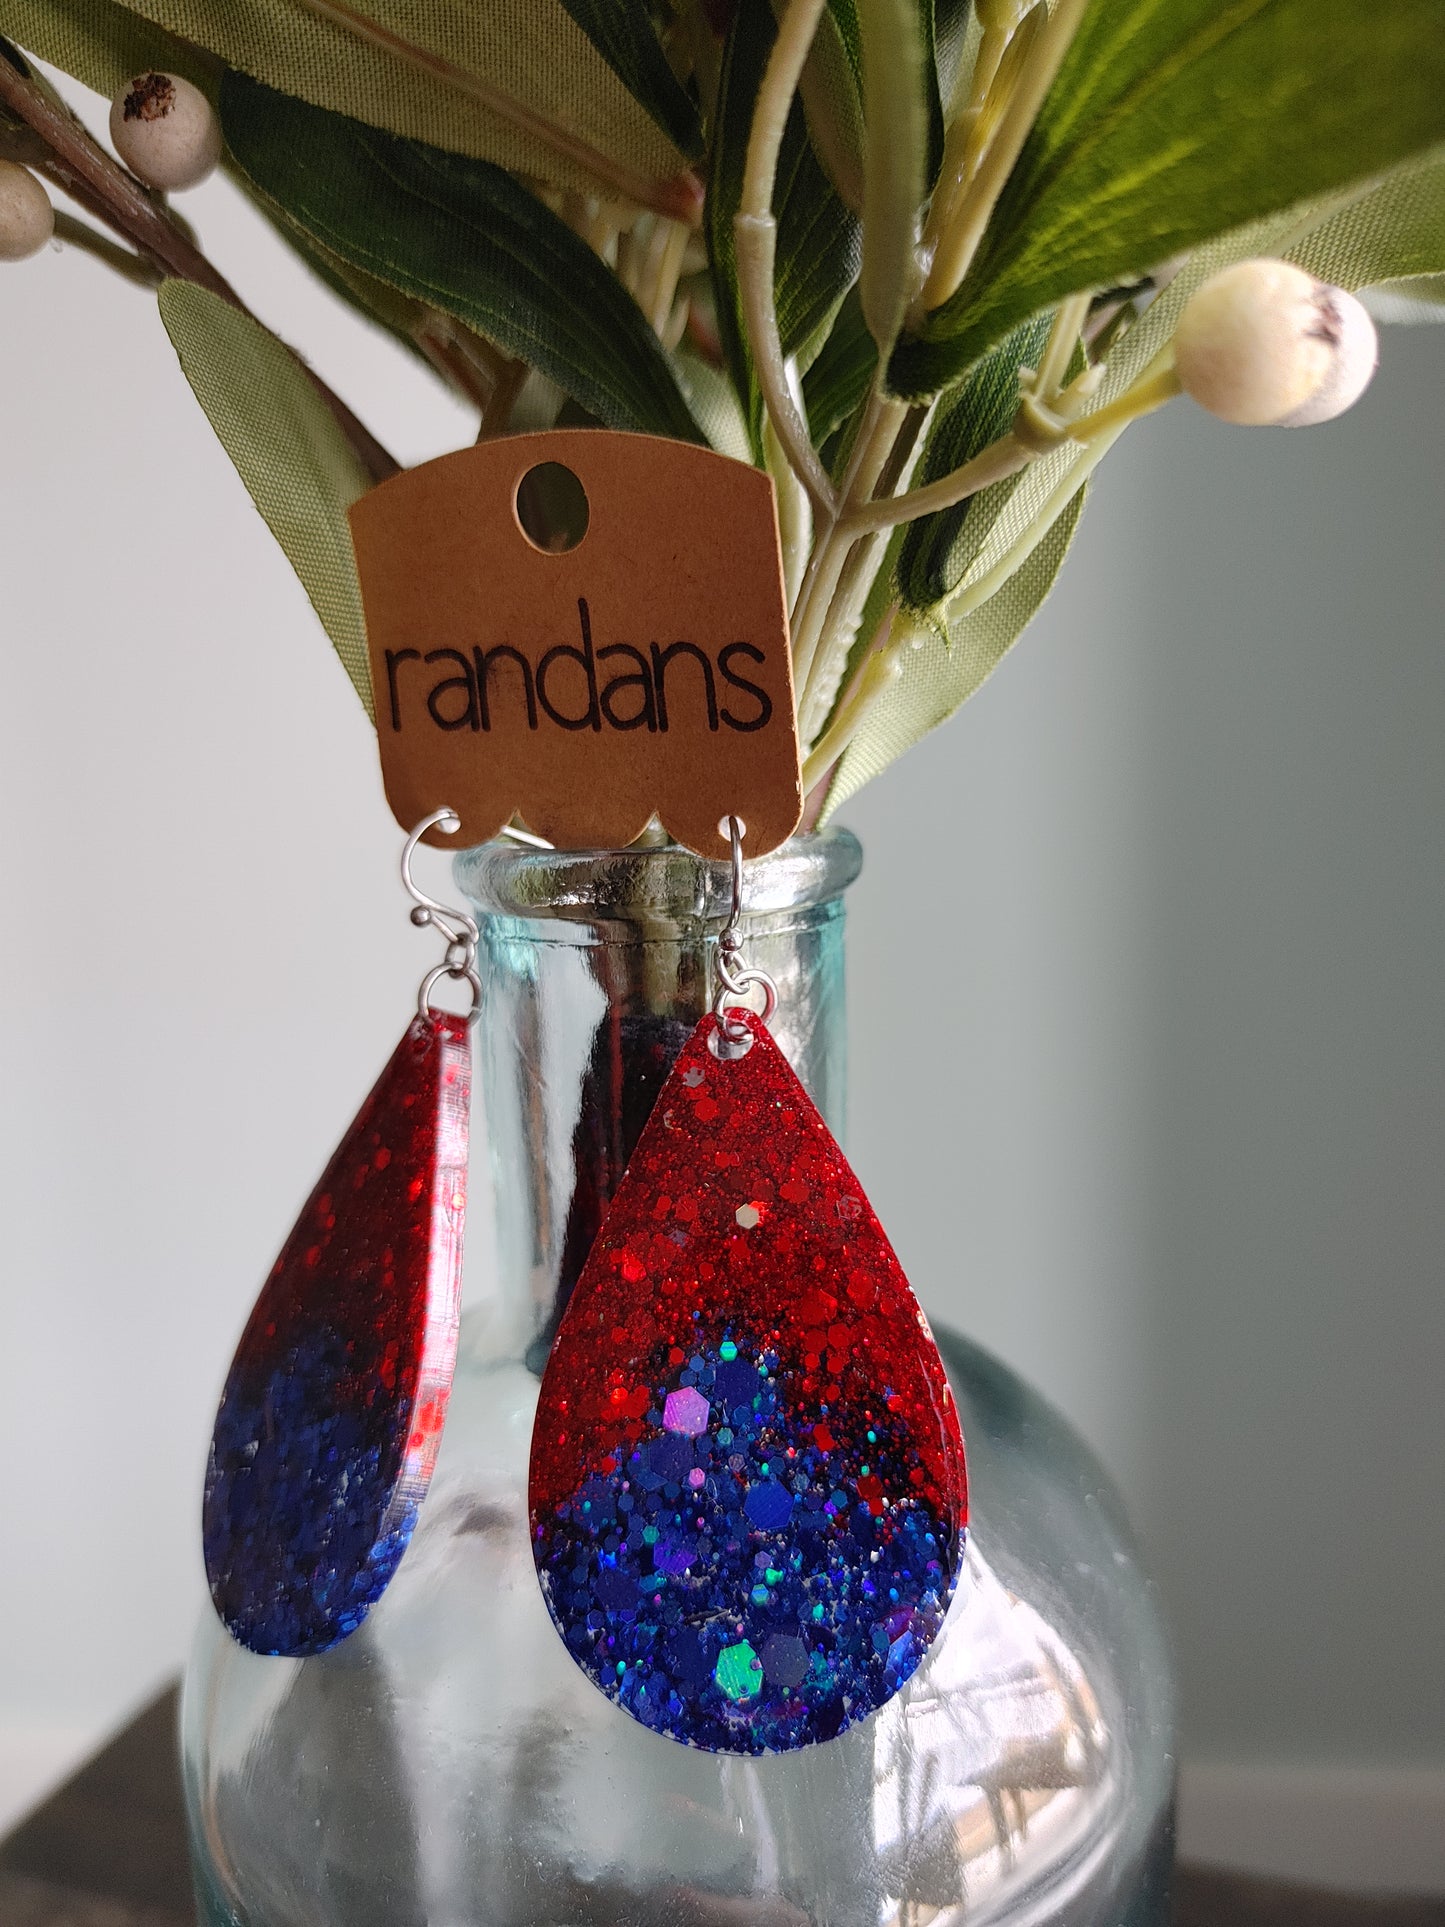 Randan's Red & Blue Glitter Earrings